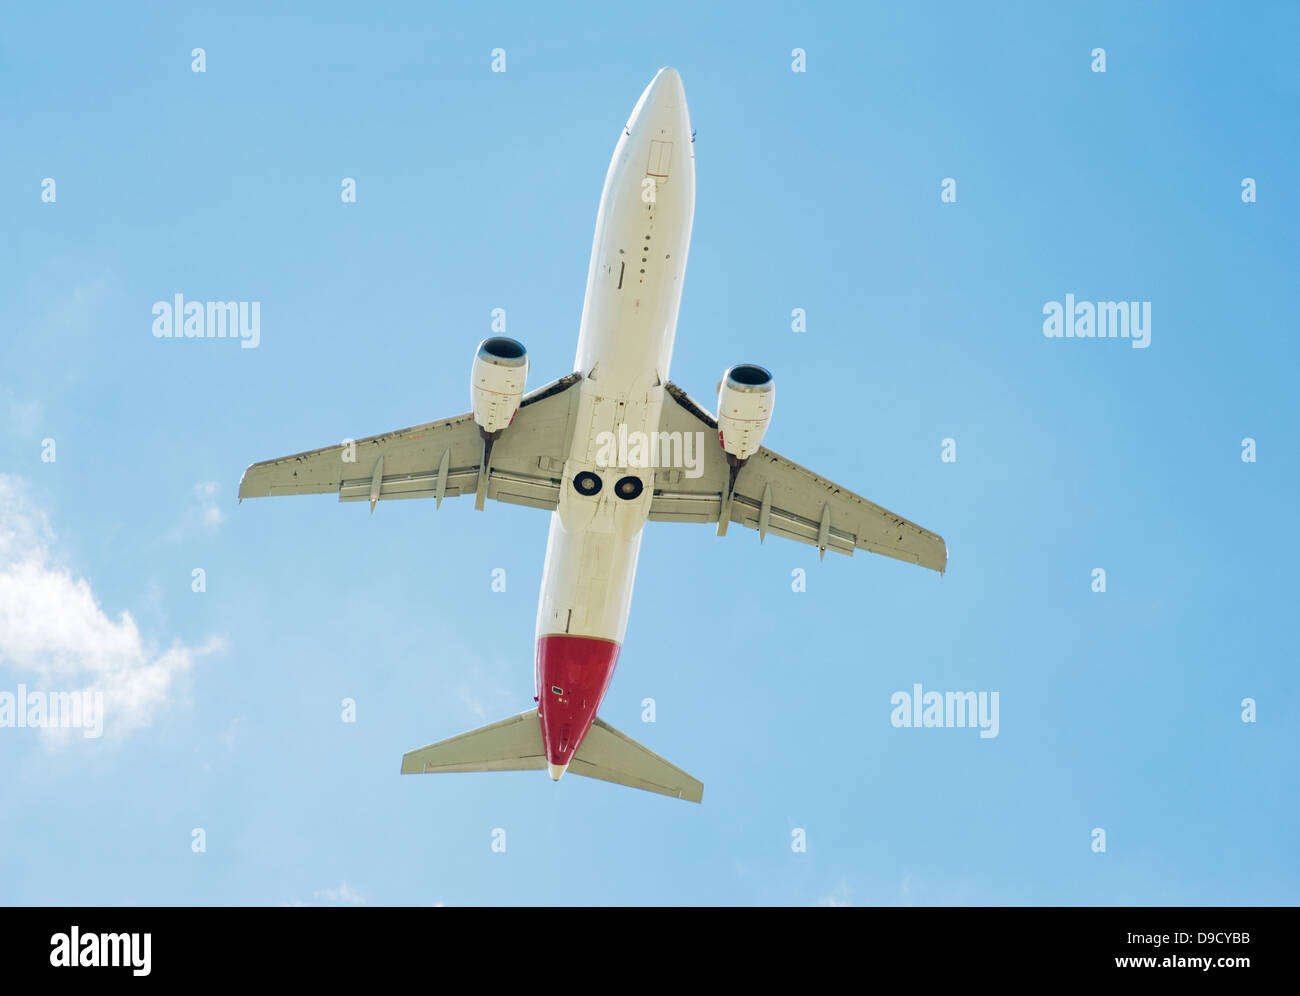 Grand avion de passagers volant dans le ciel bleu Banque D'Images